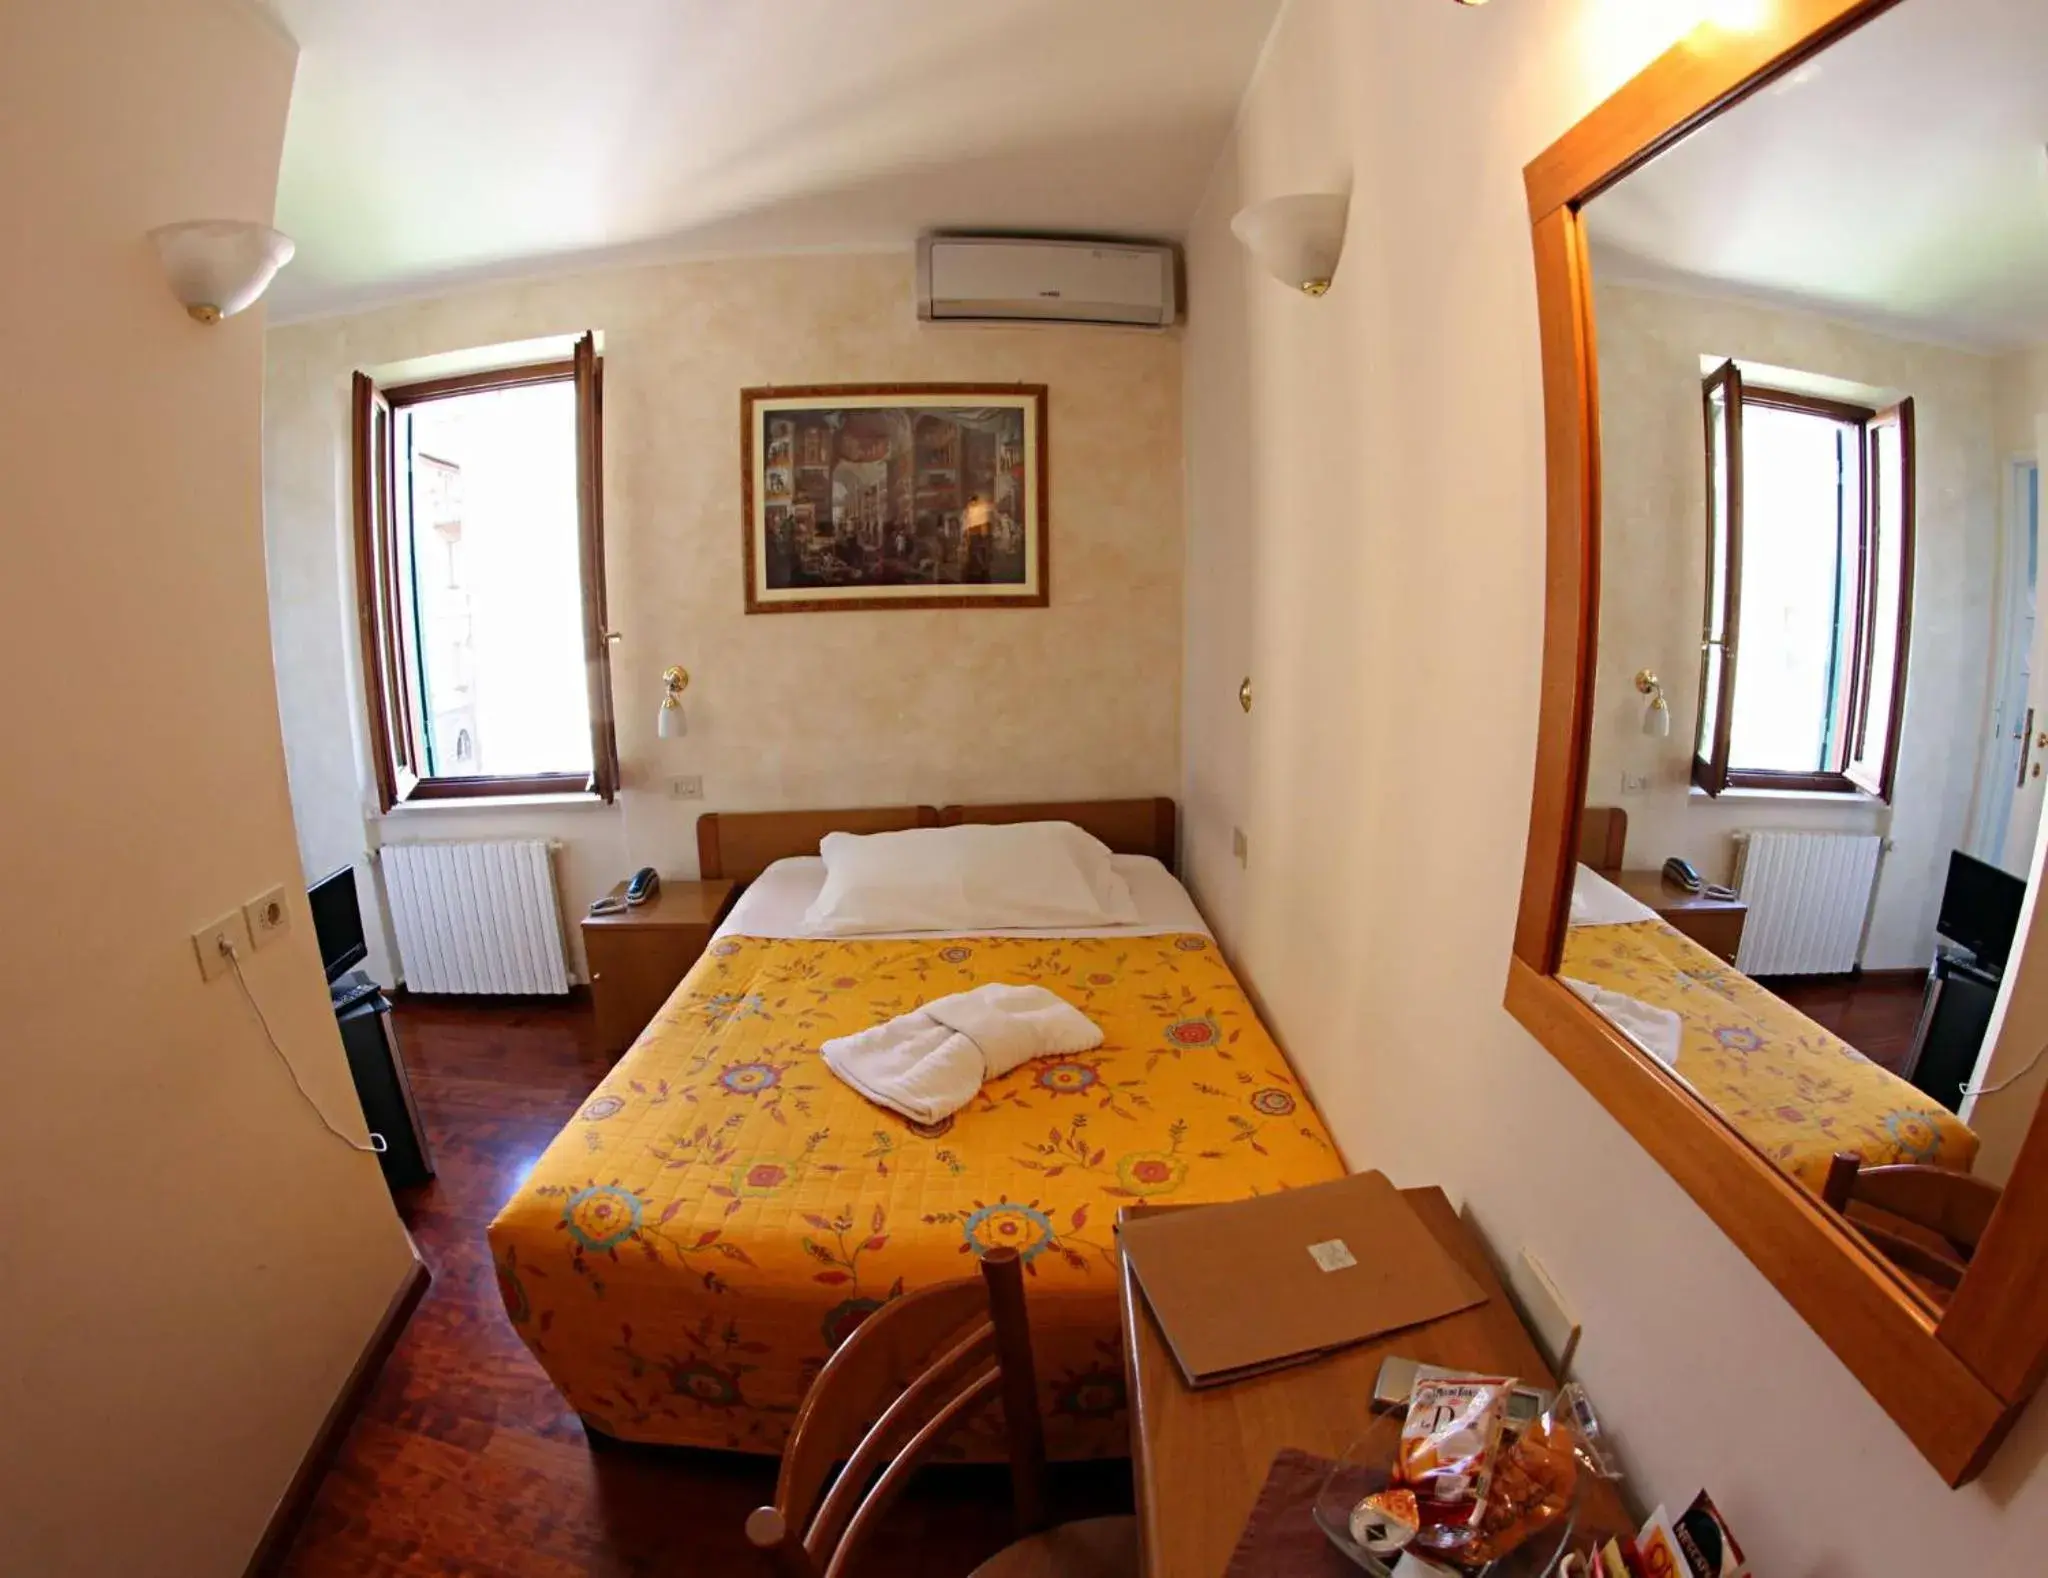 Photo of the whole room in Primavera Mini Hotel